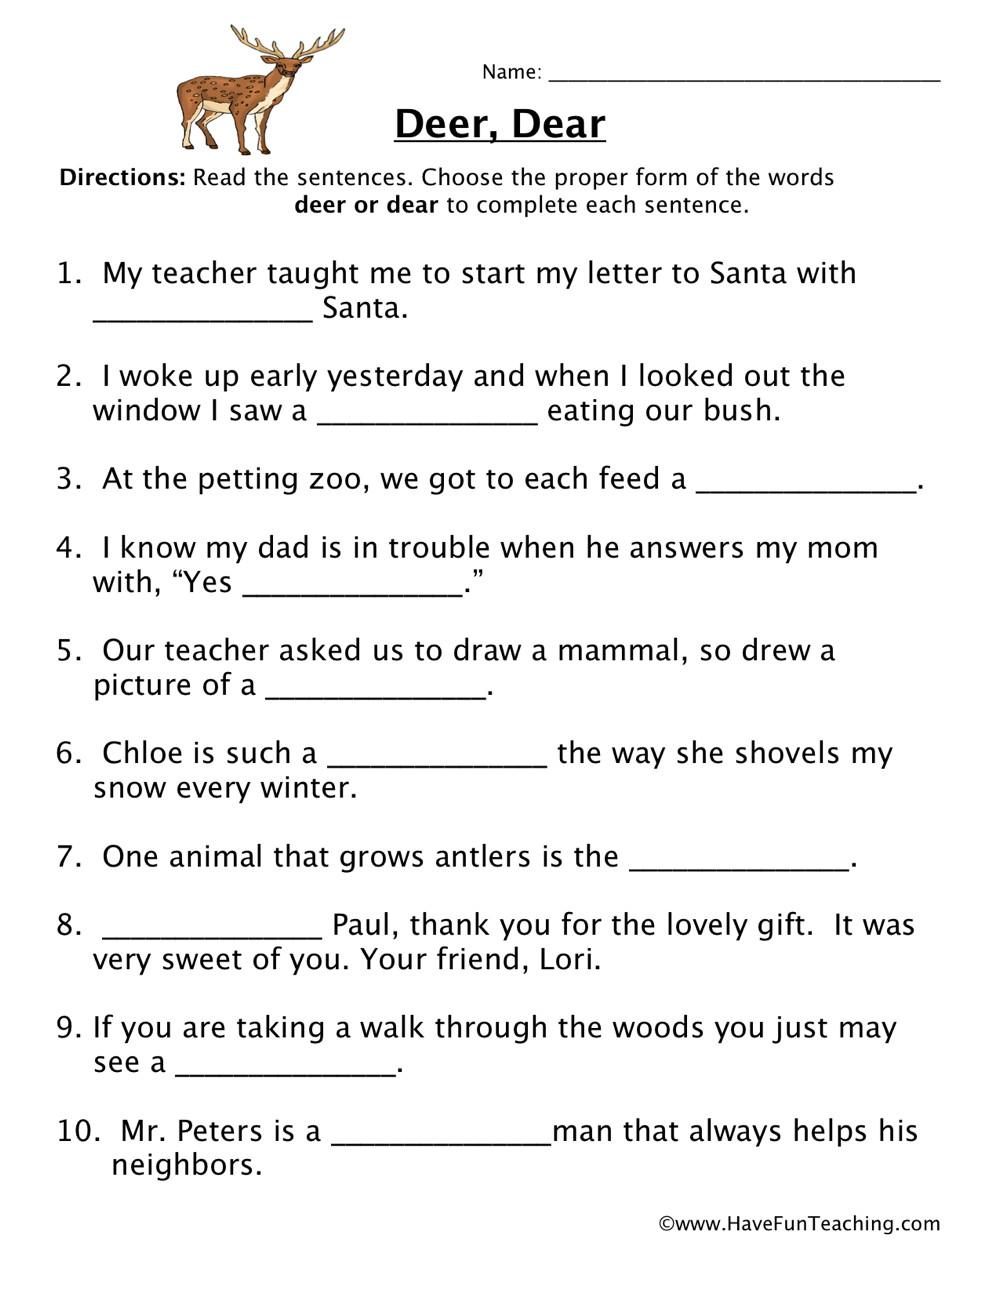 Homophones Worksheet 6th Grade Deer Dear Homophones Worksheet